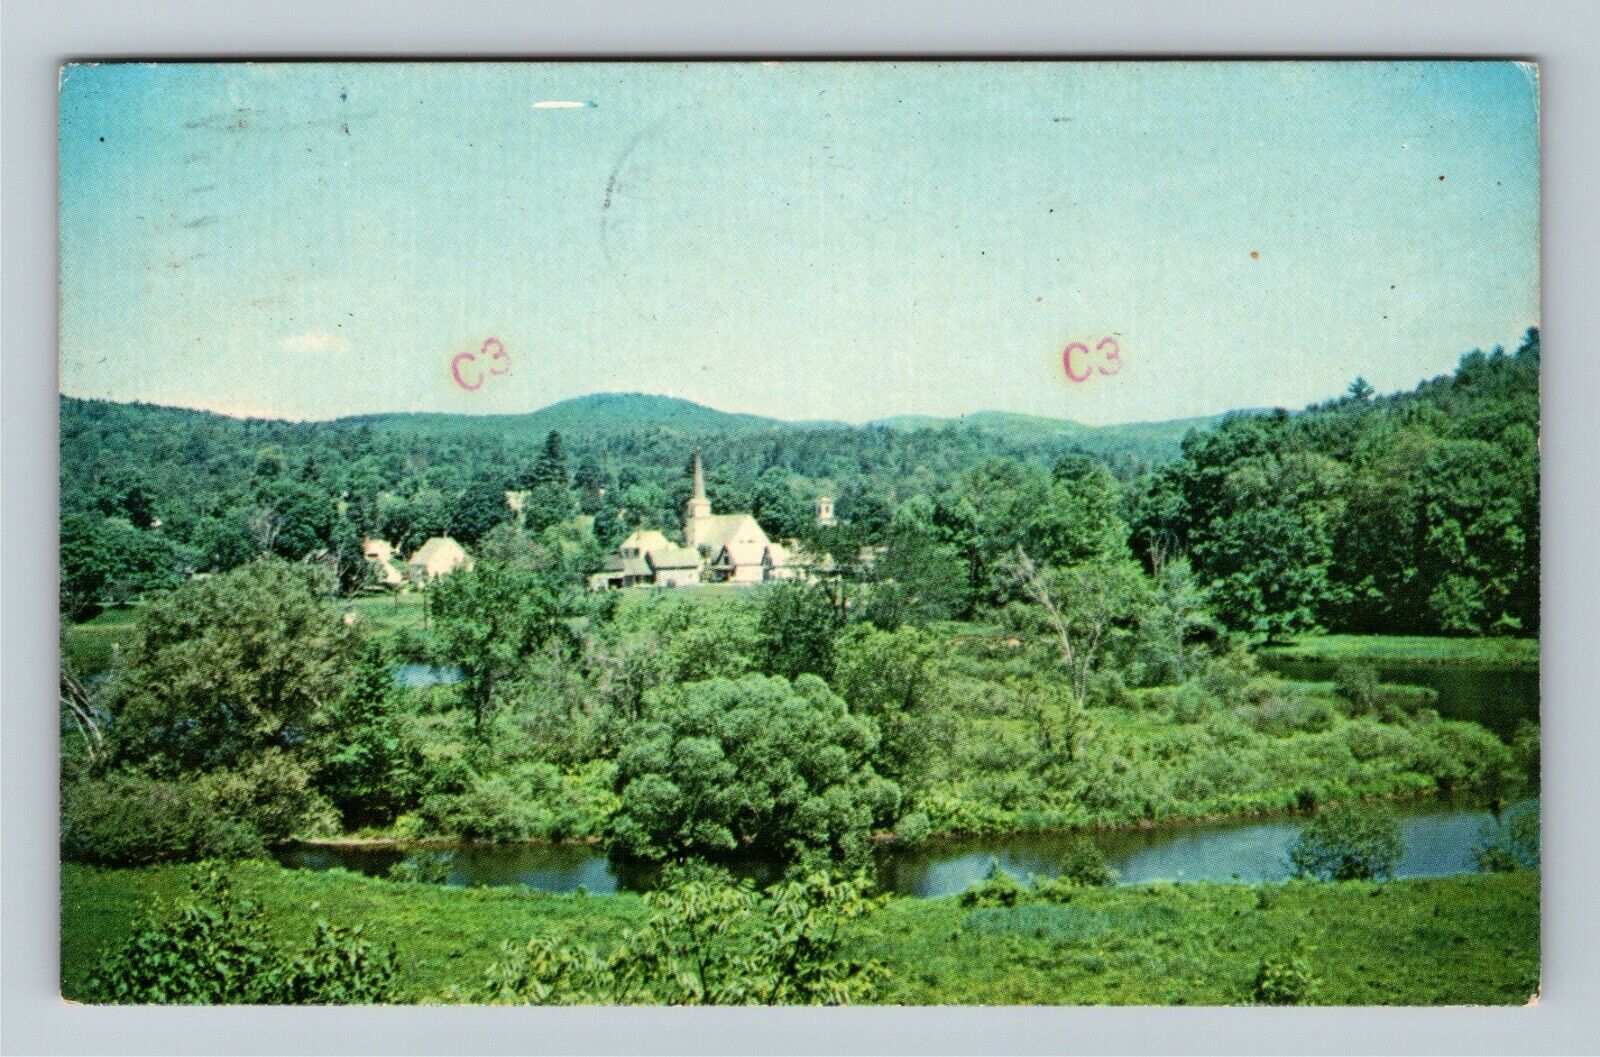 Cavendish VT-Vermont, Scenic View, c1990 Vintage Postcard